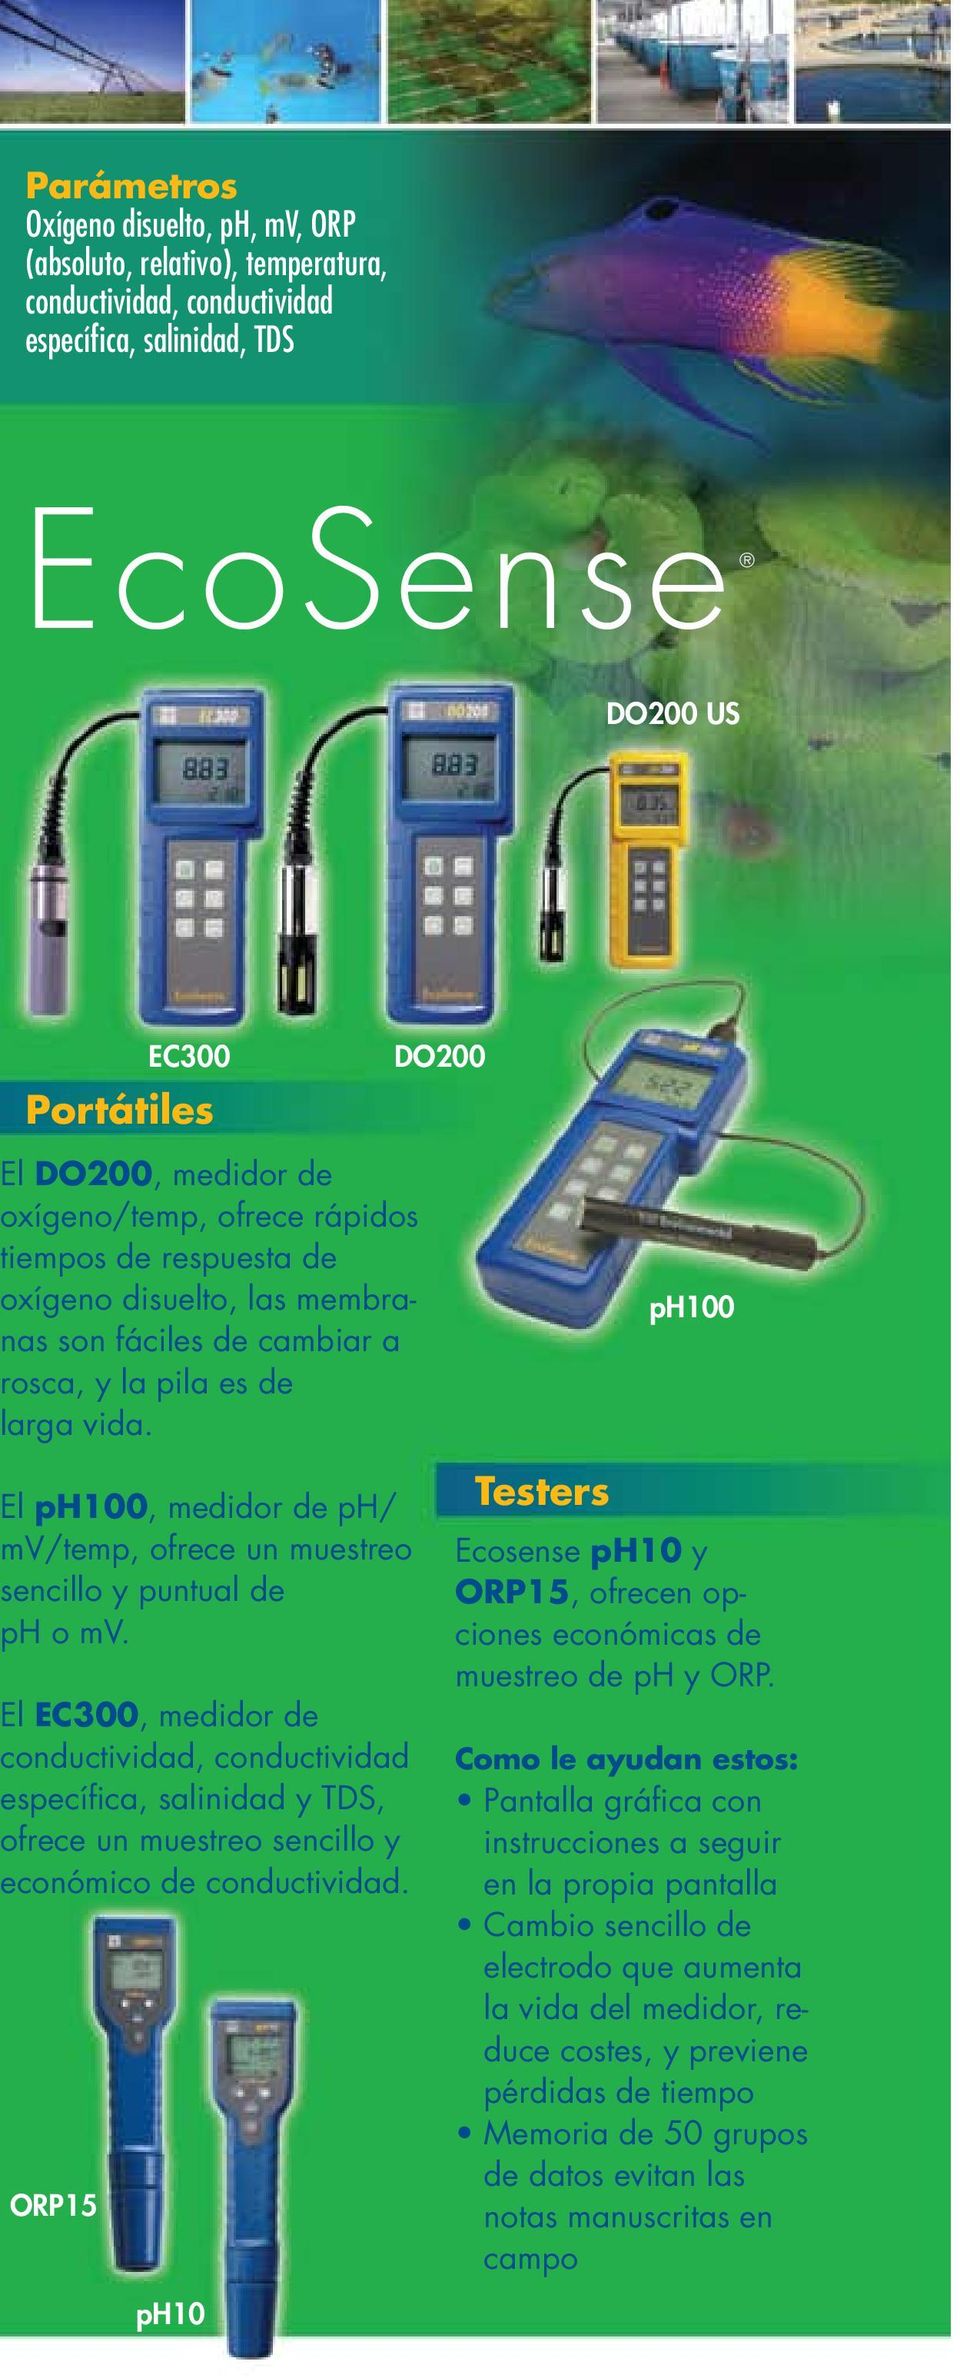 DO200 ph100 El ph100, medidor de ph/ mv/temp, ofrece un muestreo sencillo y puntual de ph o mv.